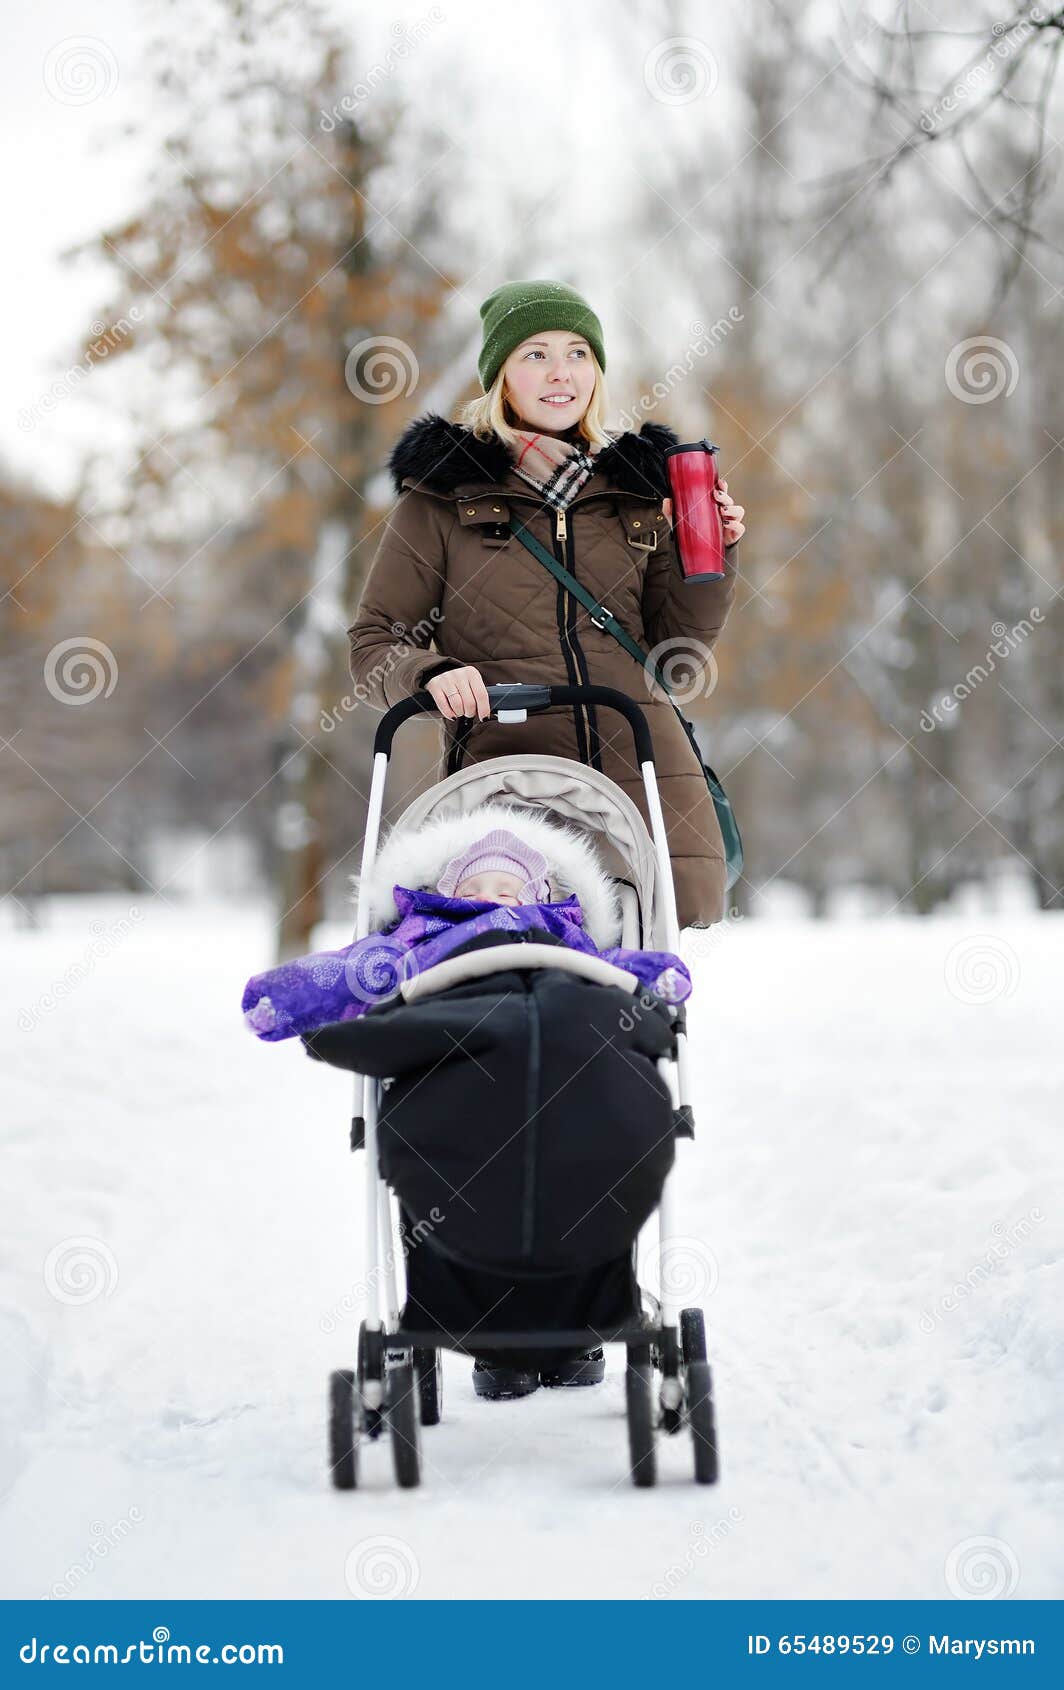 baby stroller for winter